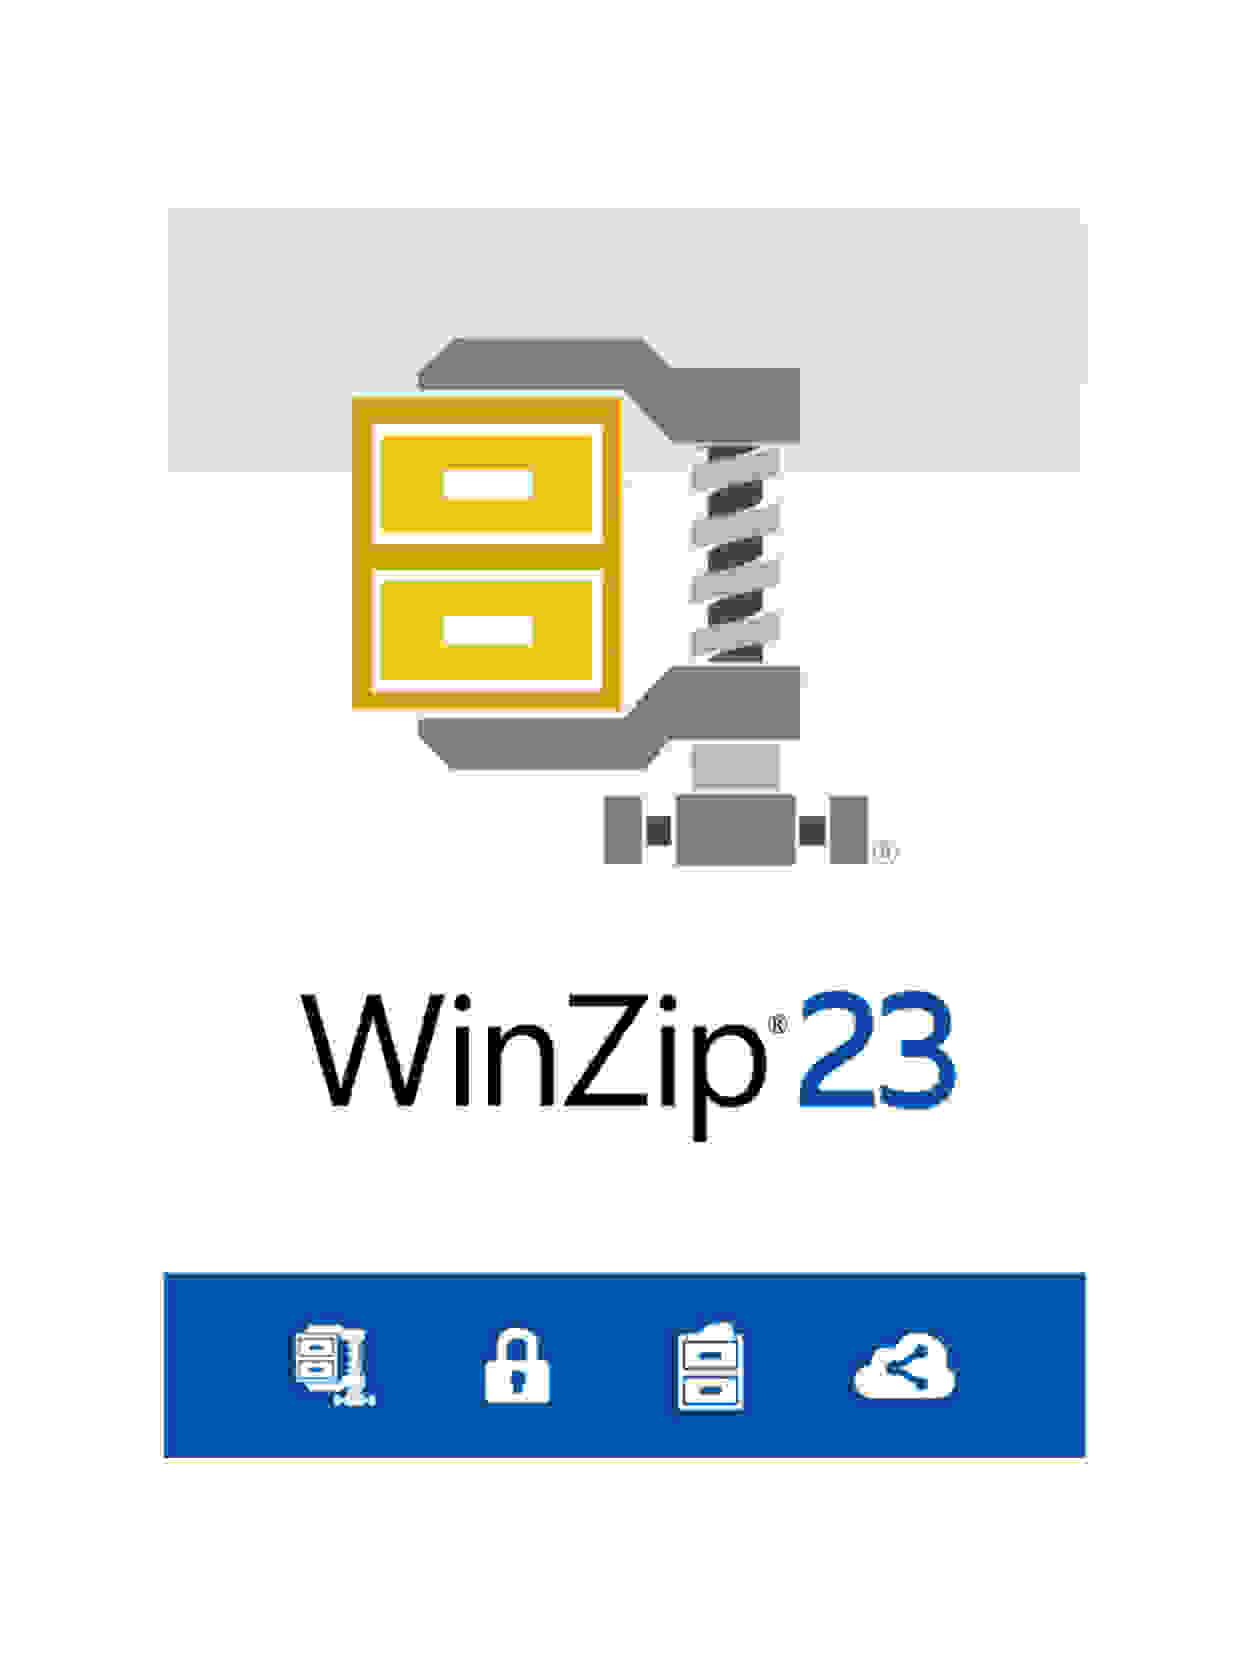 Winzip Free Calendar 2020